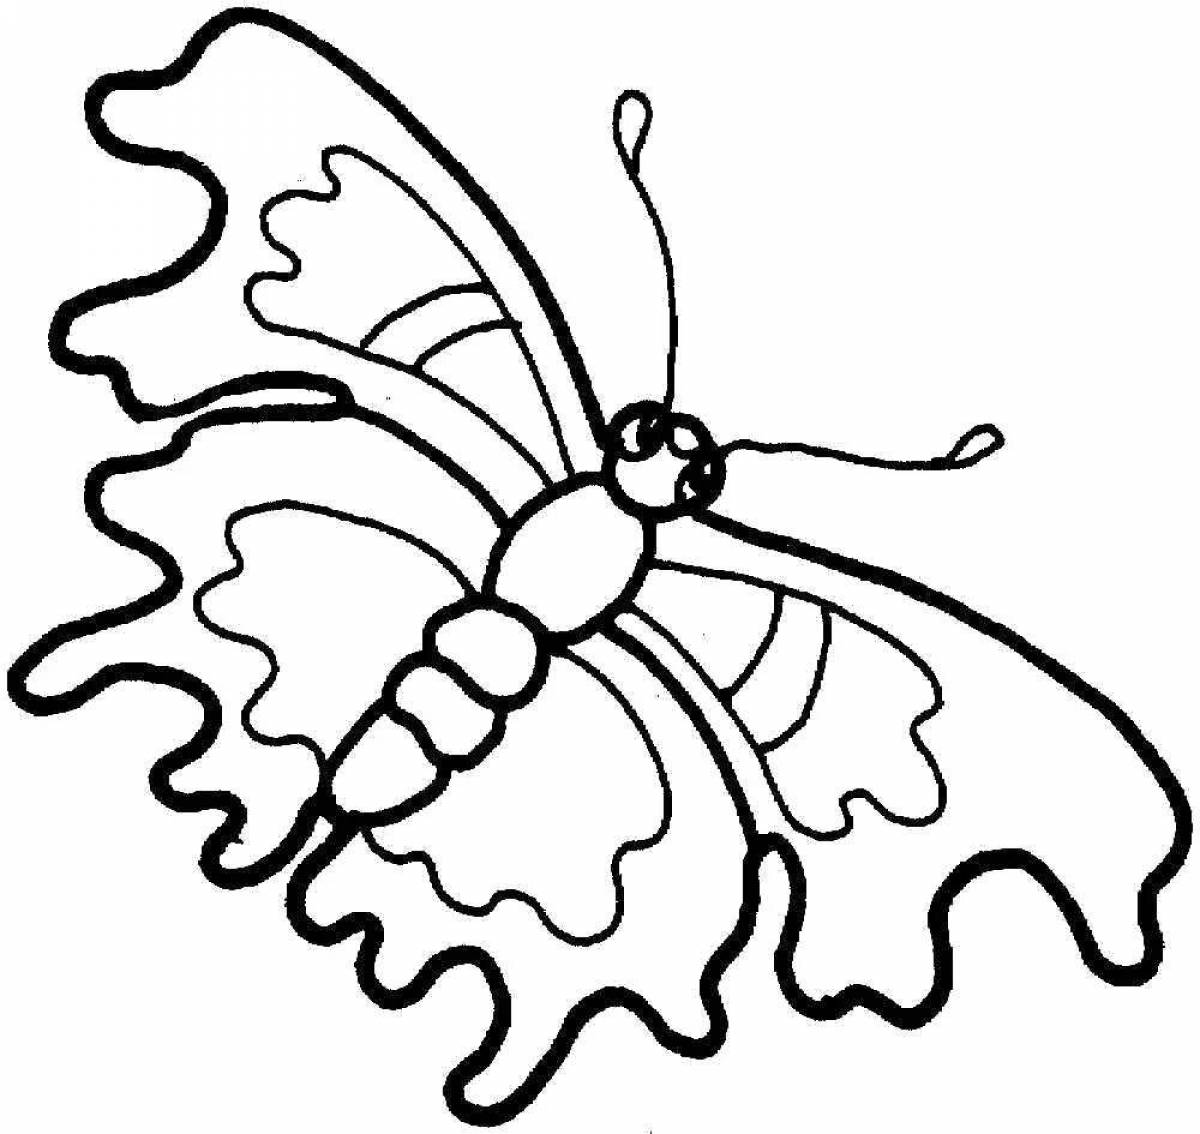 Увлекательная раскраска насекомых для детей 6-7 лет